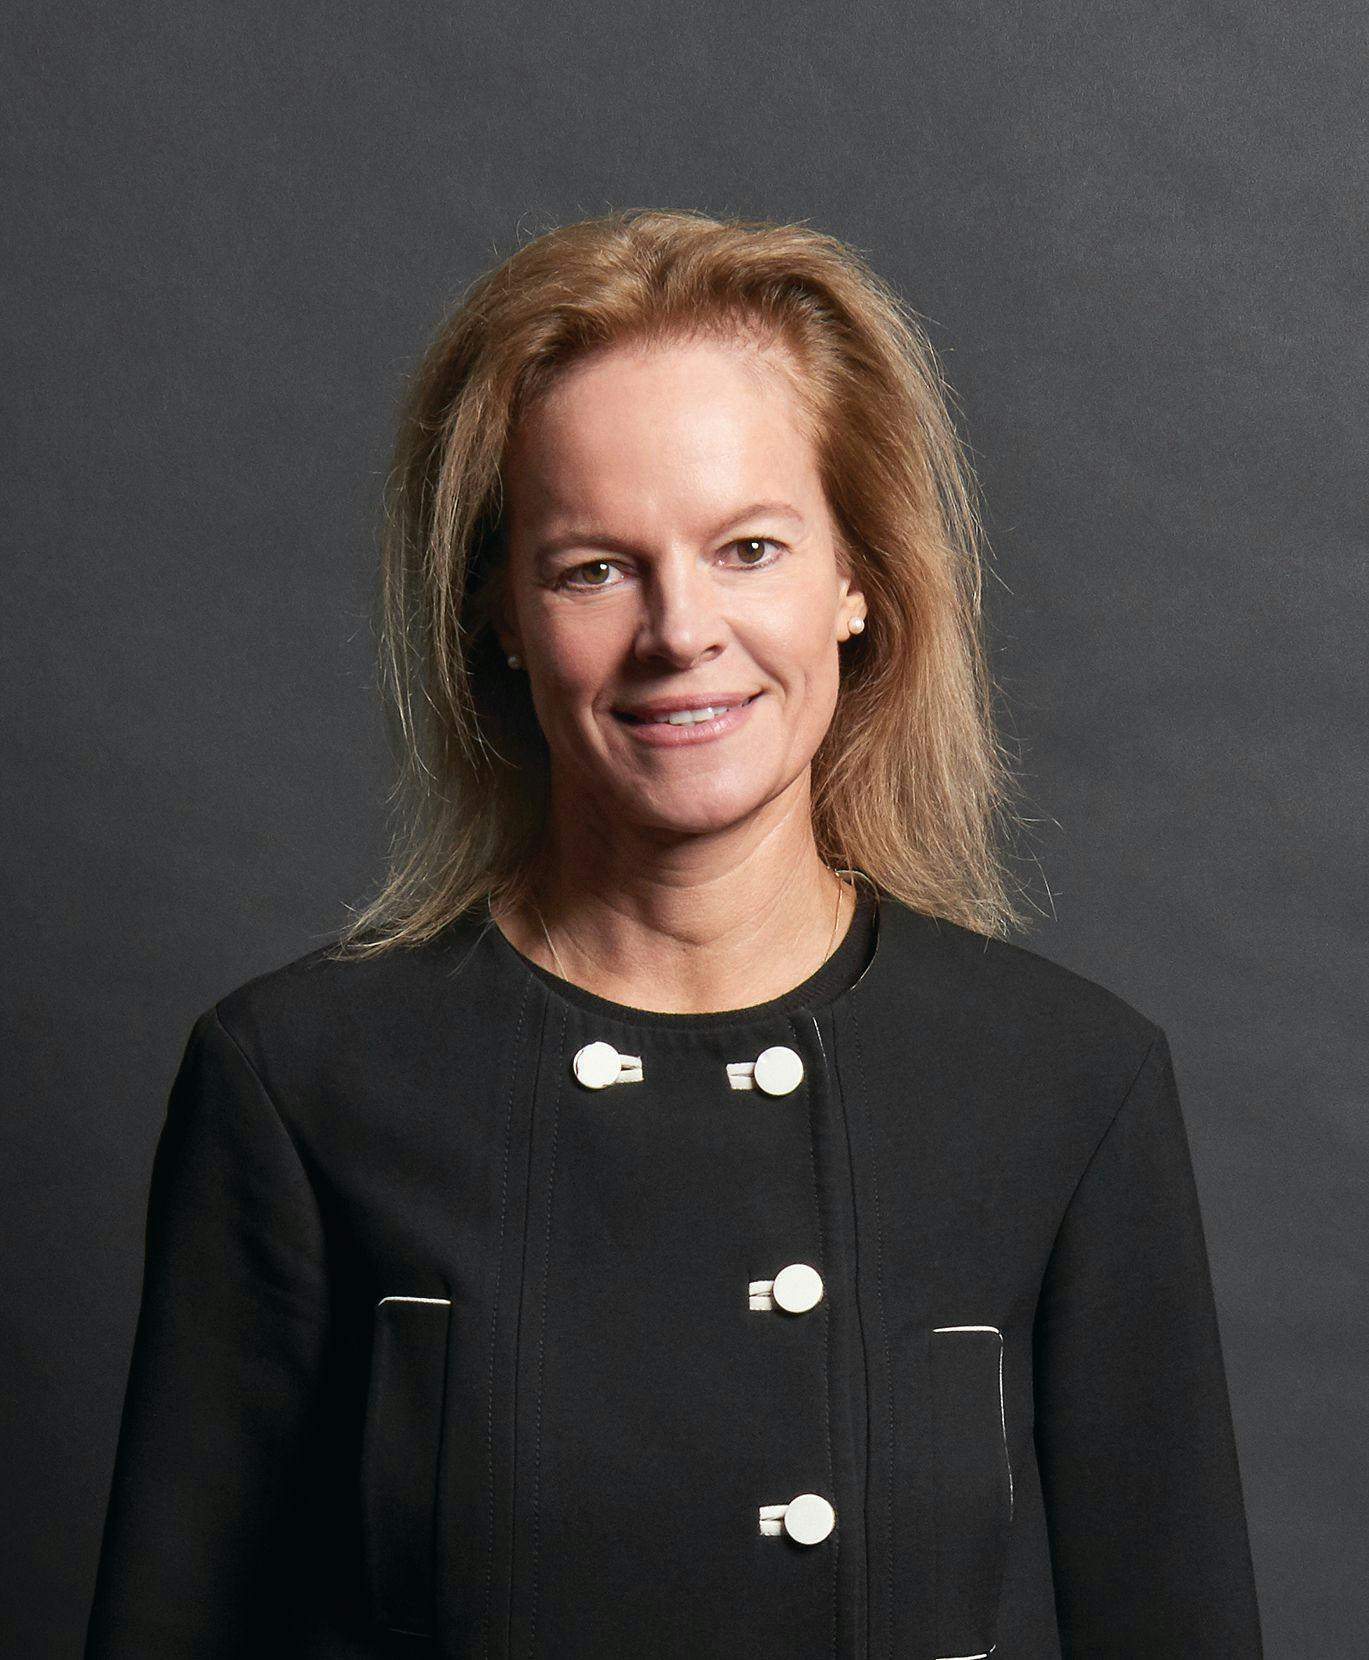 Samantha Cheetham – SDI CEO and Managing Director